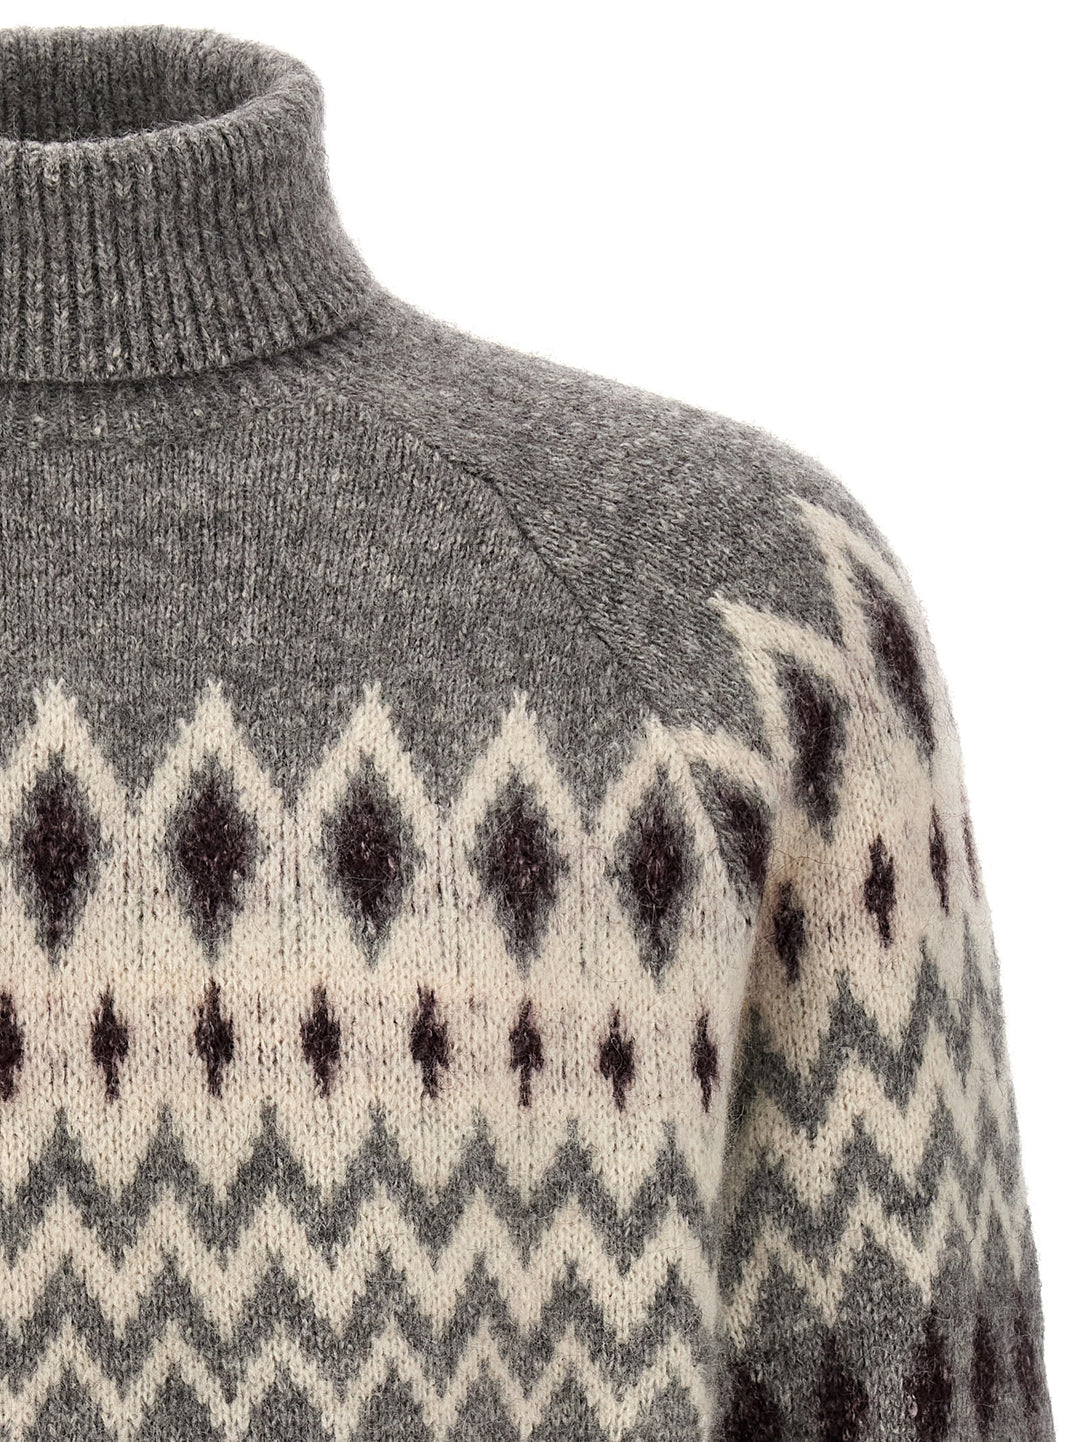 Jacquard Patterned Sweater Maglioni Grigio